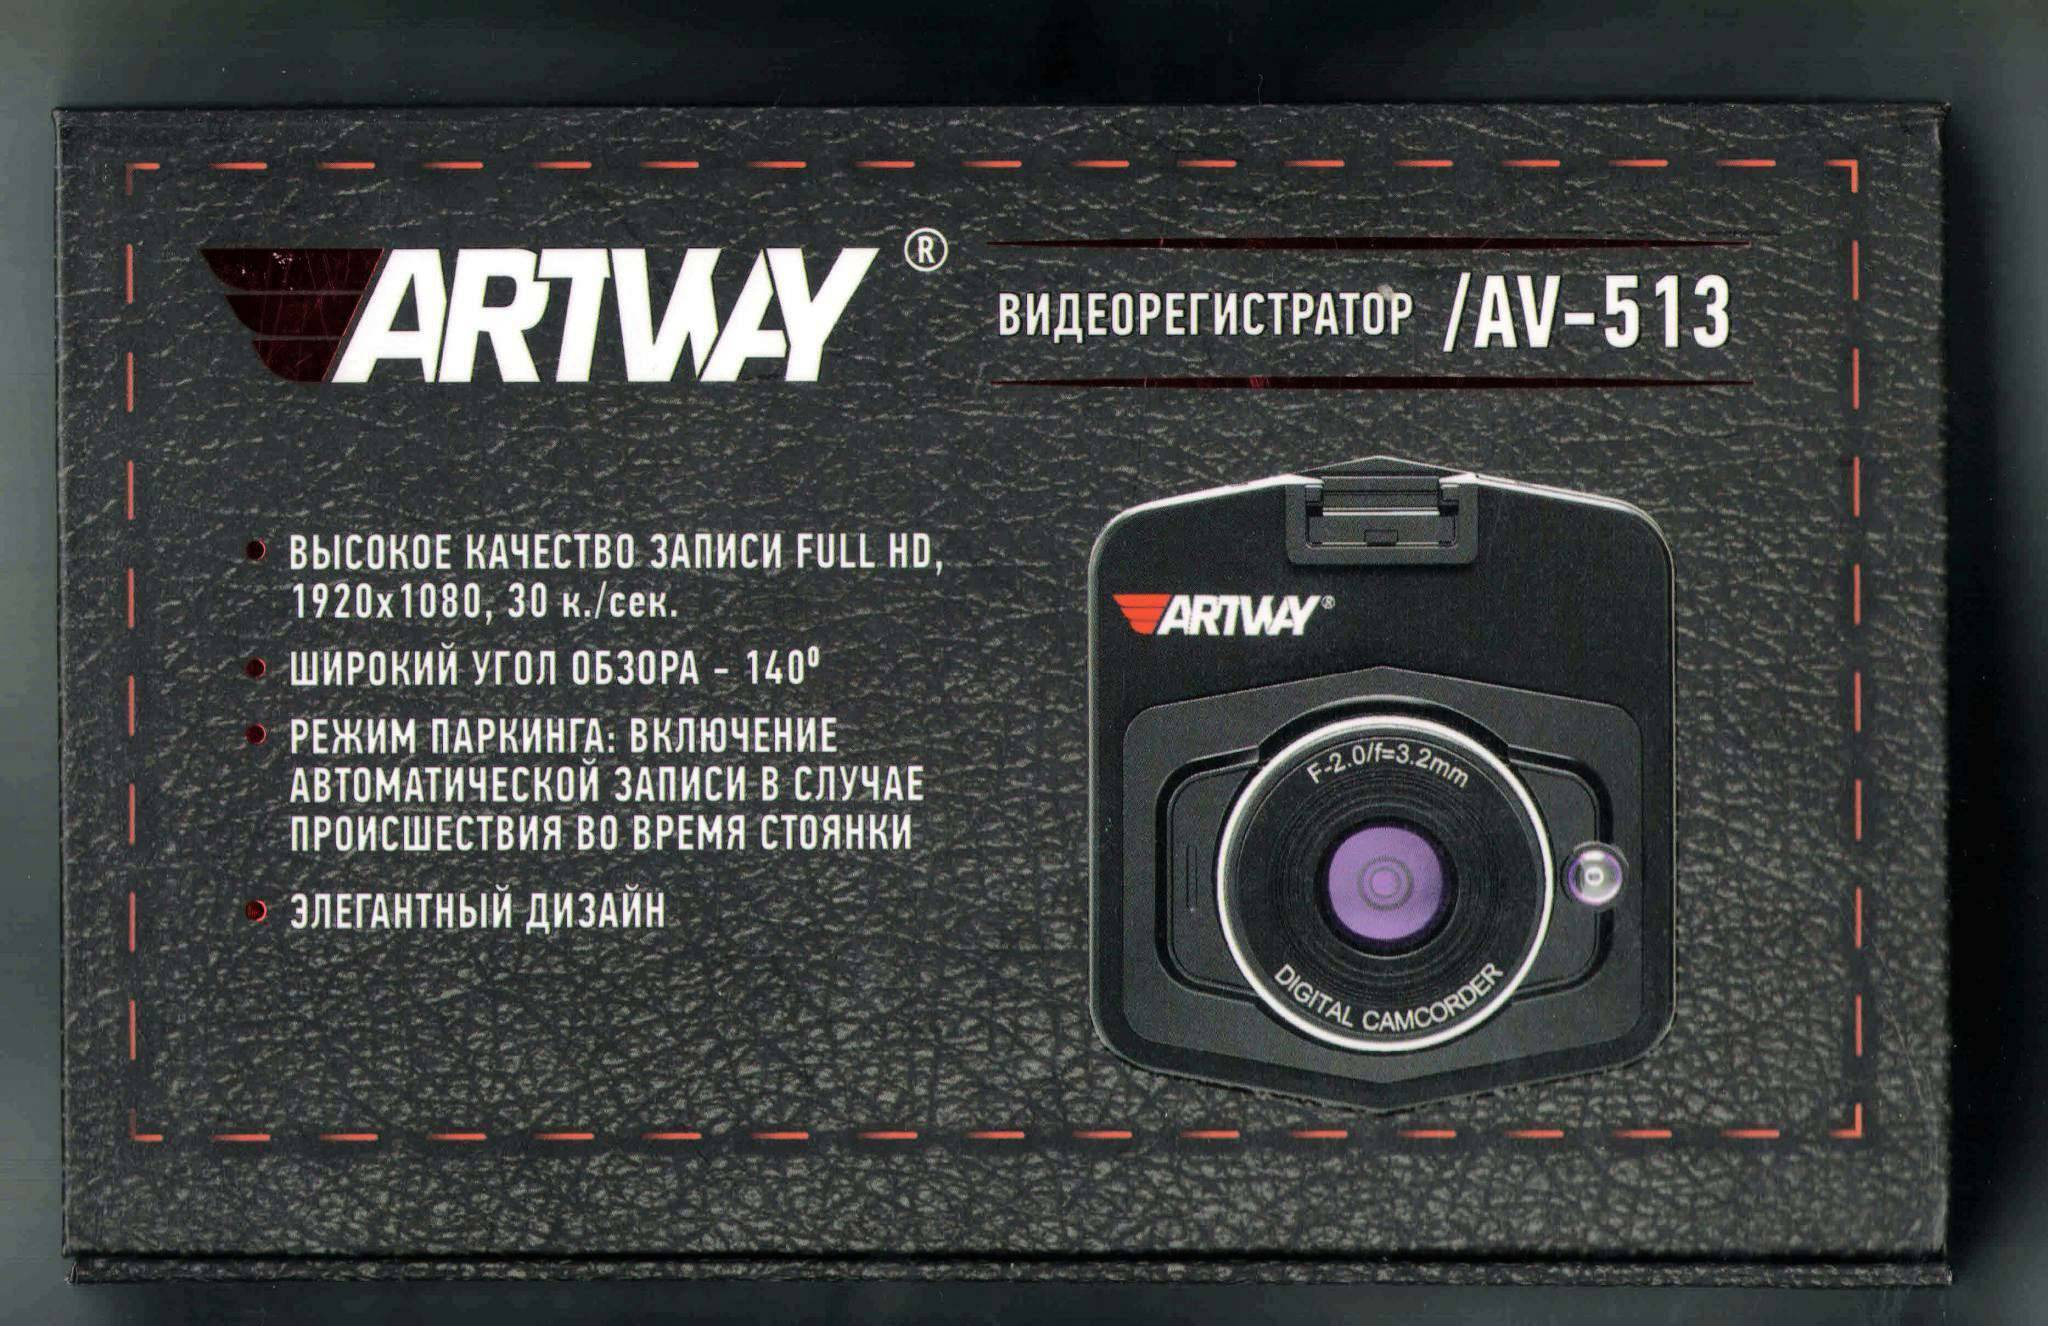 Реальные отзывы на artway av-603 от владельцев зеркала - видеорегистратора